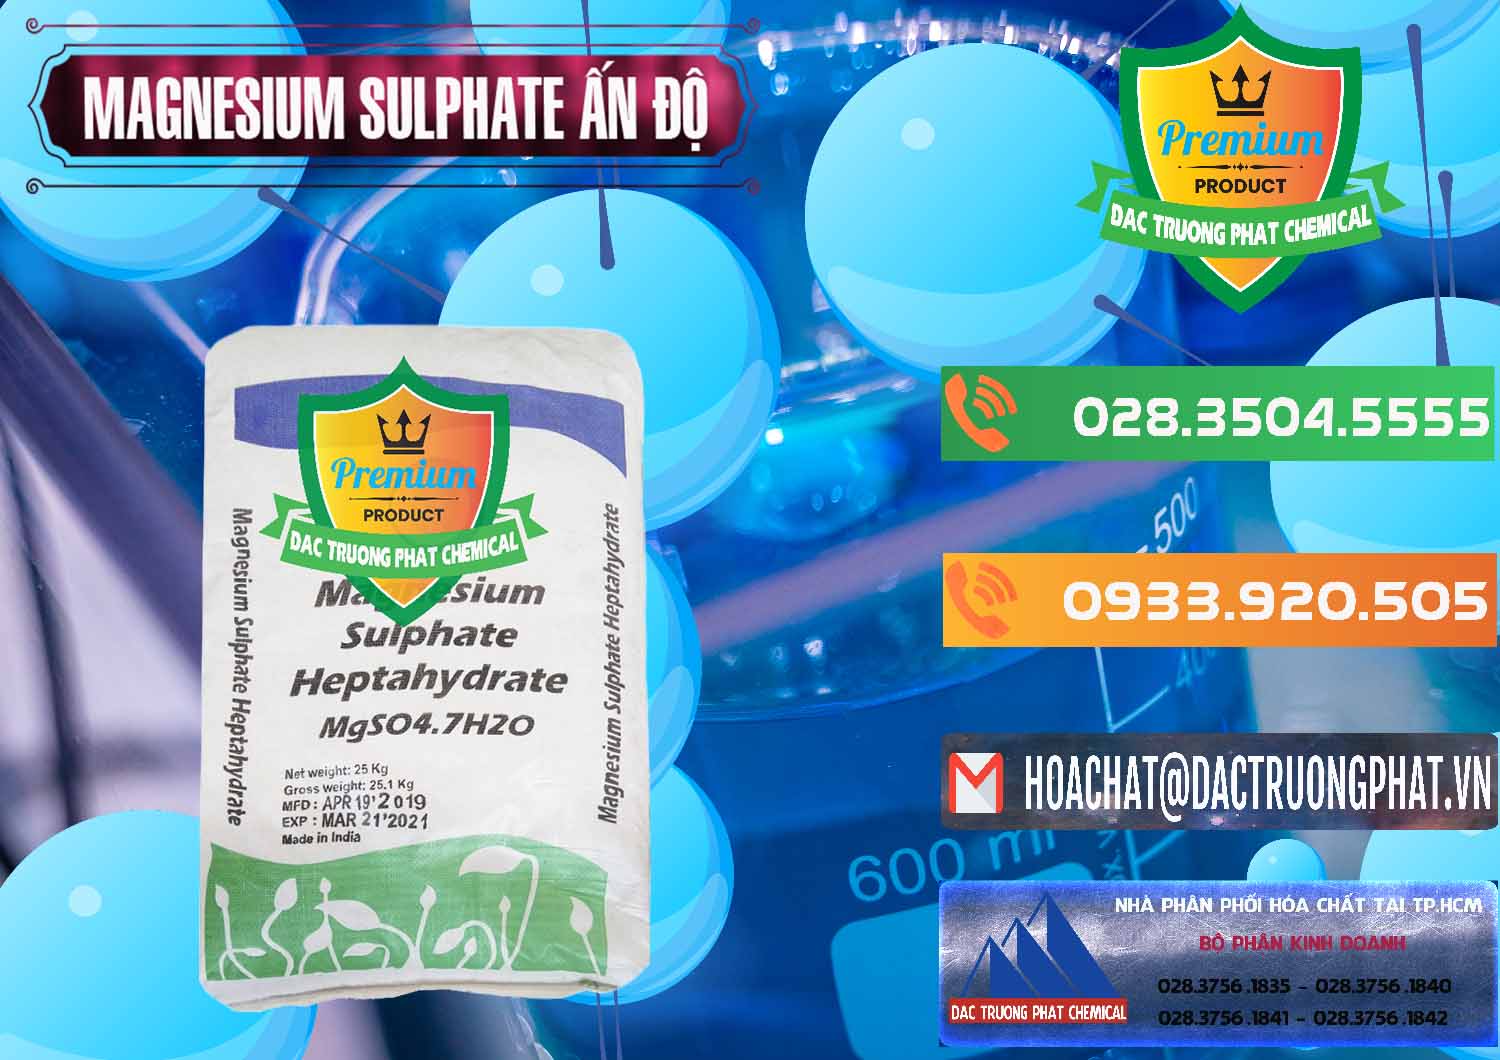 Nơi chuyên kinh doanh _ bán MGSO4.7H2O – Magnesium Sulphate Heptahydrate Ấn Độ India - 0362 - Cty bán - phân phối hóa chất tại TP.HCM - hoachatxulynuoc.com.vn